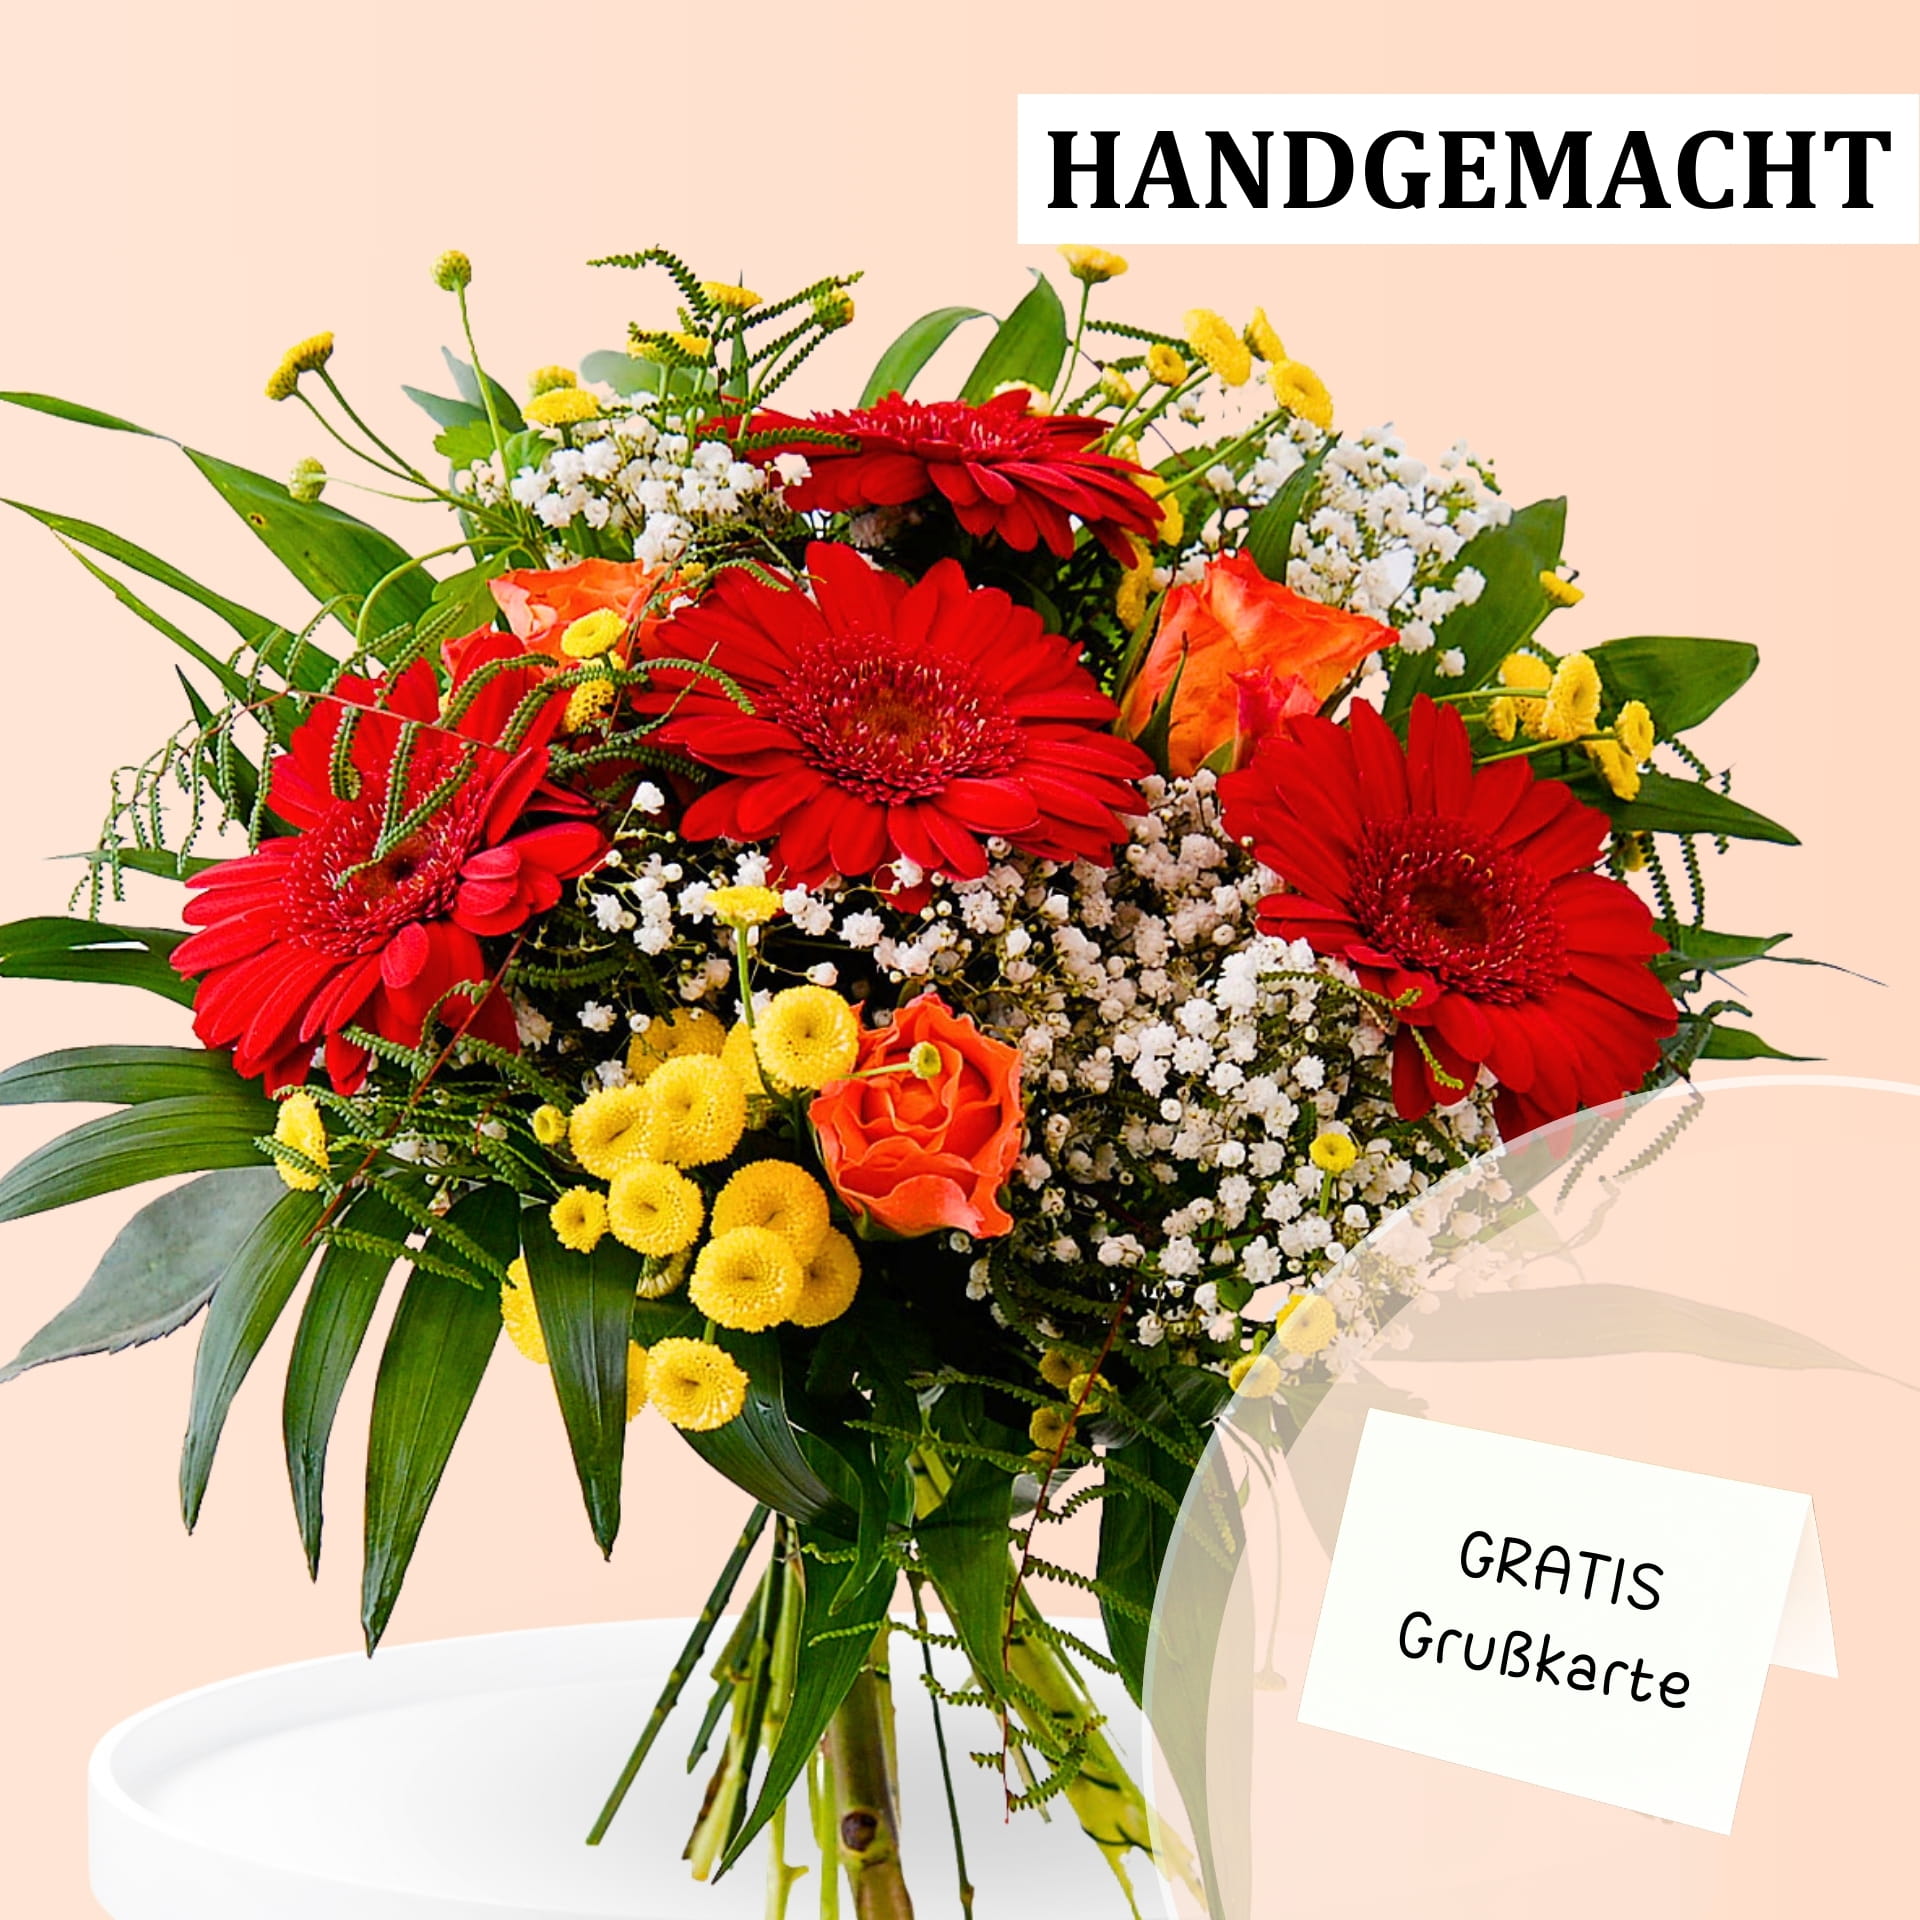 Strauß aus leuchtend roten Gerbera, gelben Rosen und zarten weißen Blüten, kombiniert mit grünen Blättern. Text auf dem Bild: "HANDGEMACHT" und "GRATIS Grußkarte".